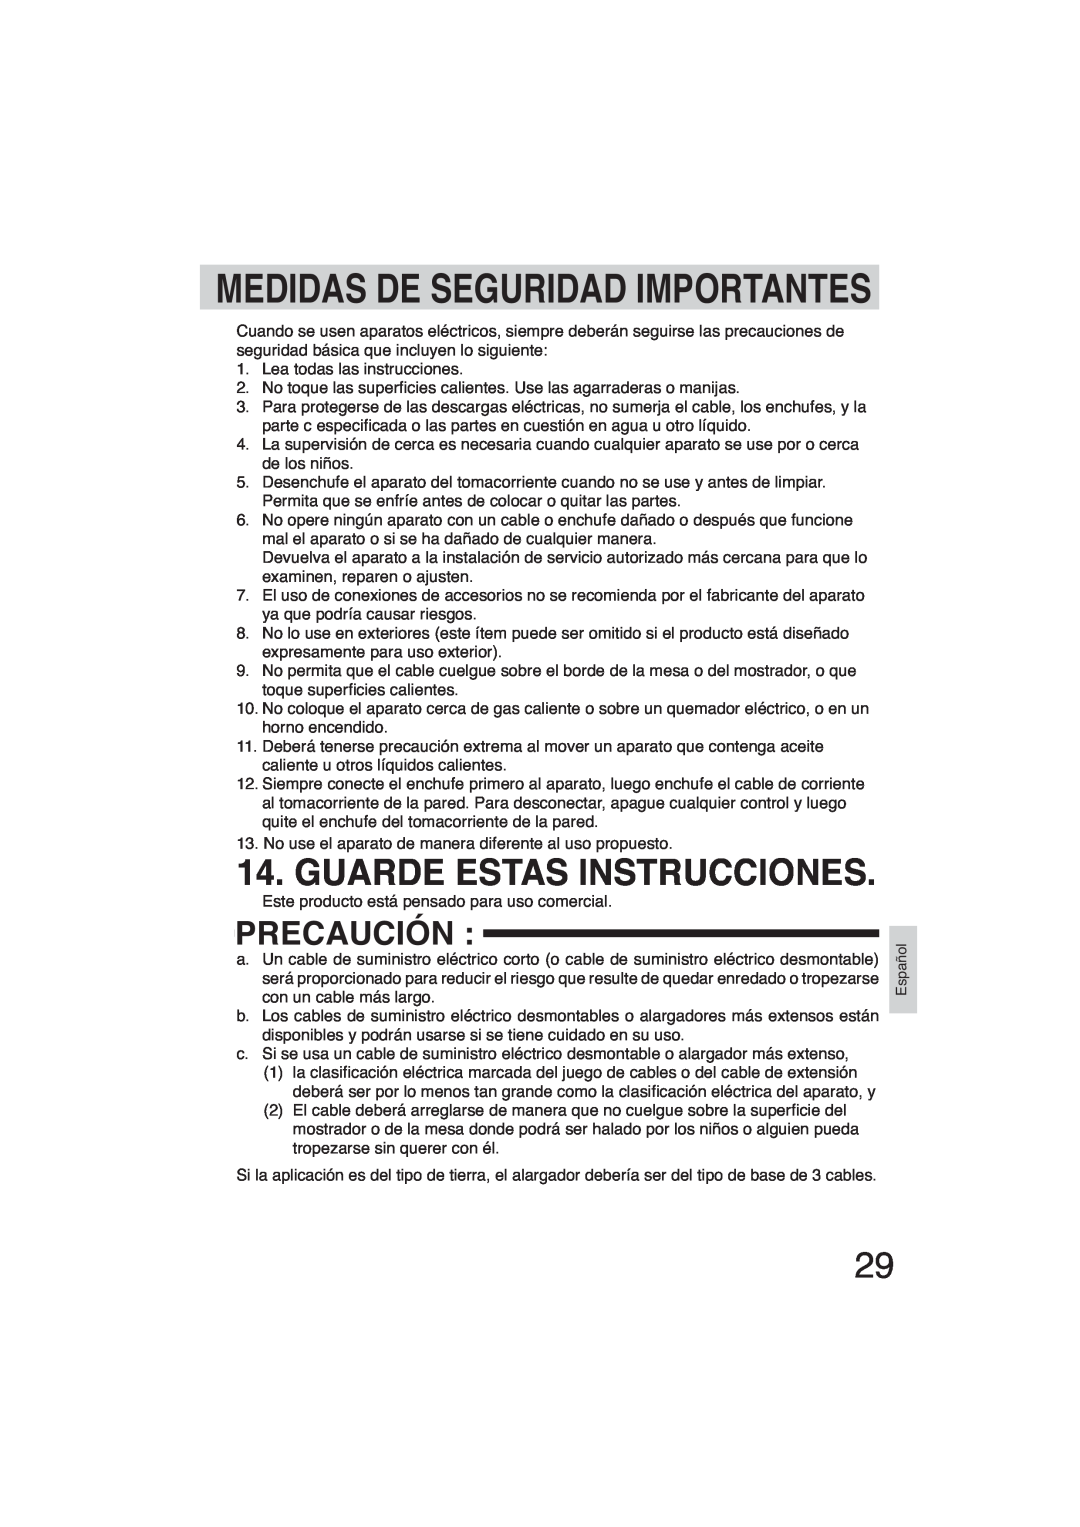 Panasonic SR-GA721 manuel dutilisation Medidas De Seguridad Importantes, Precaución, Guarde Estas Instrucciones 